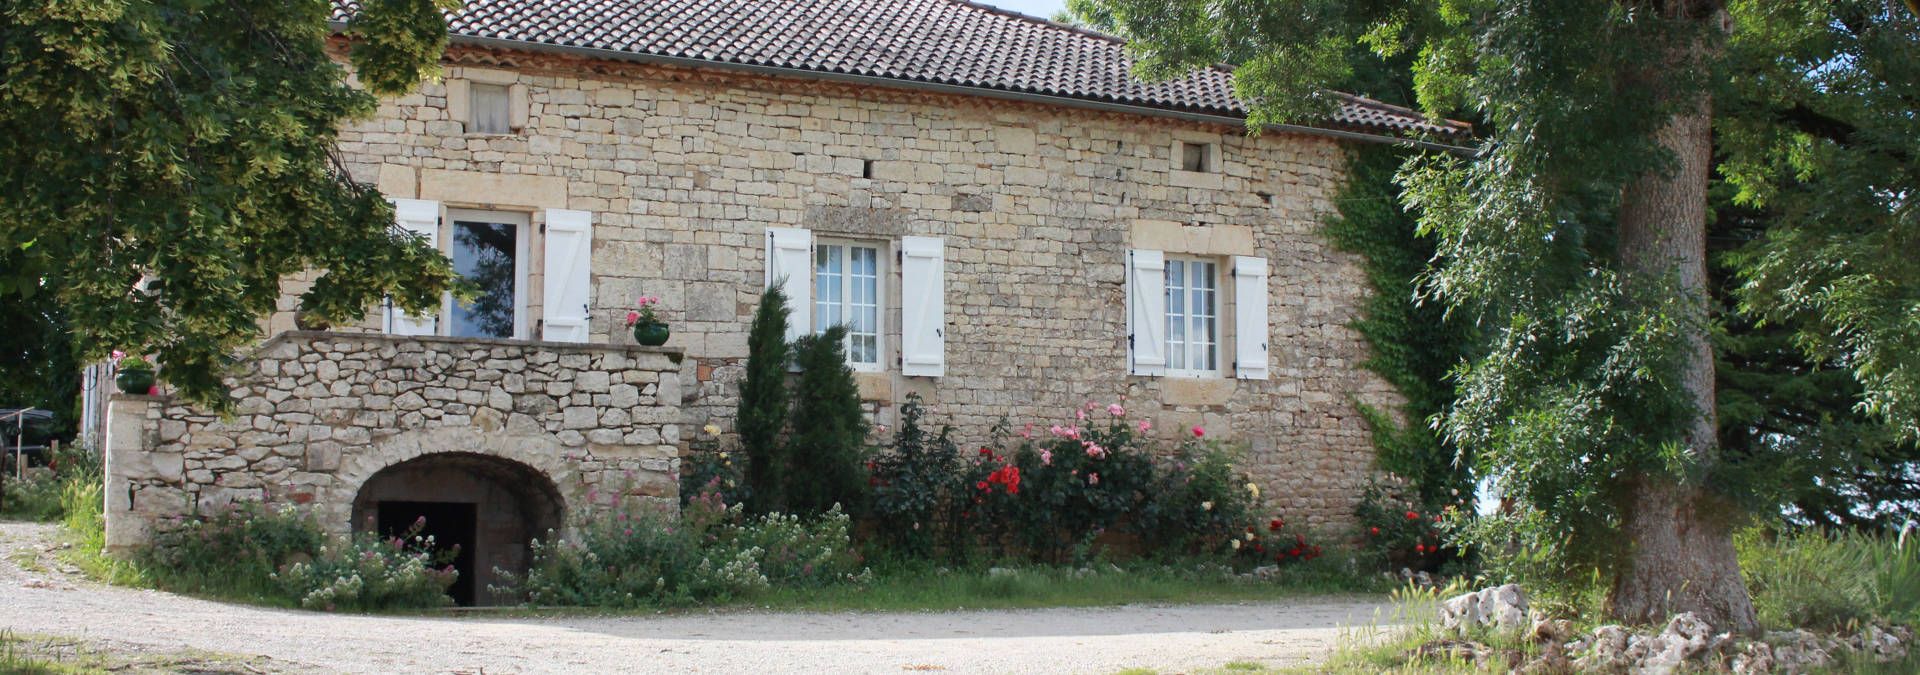 Château Ponzac - Rue des Vignerons